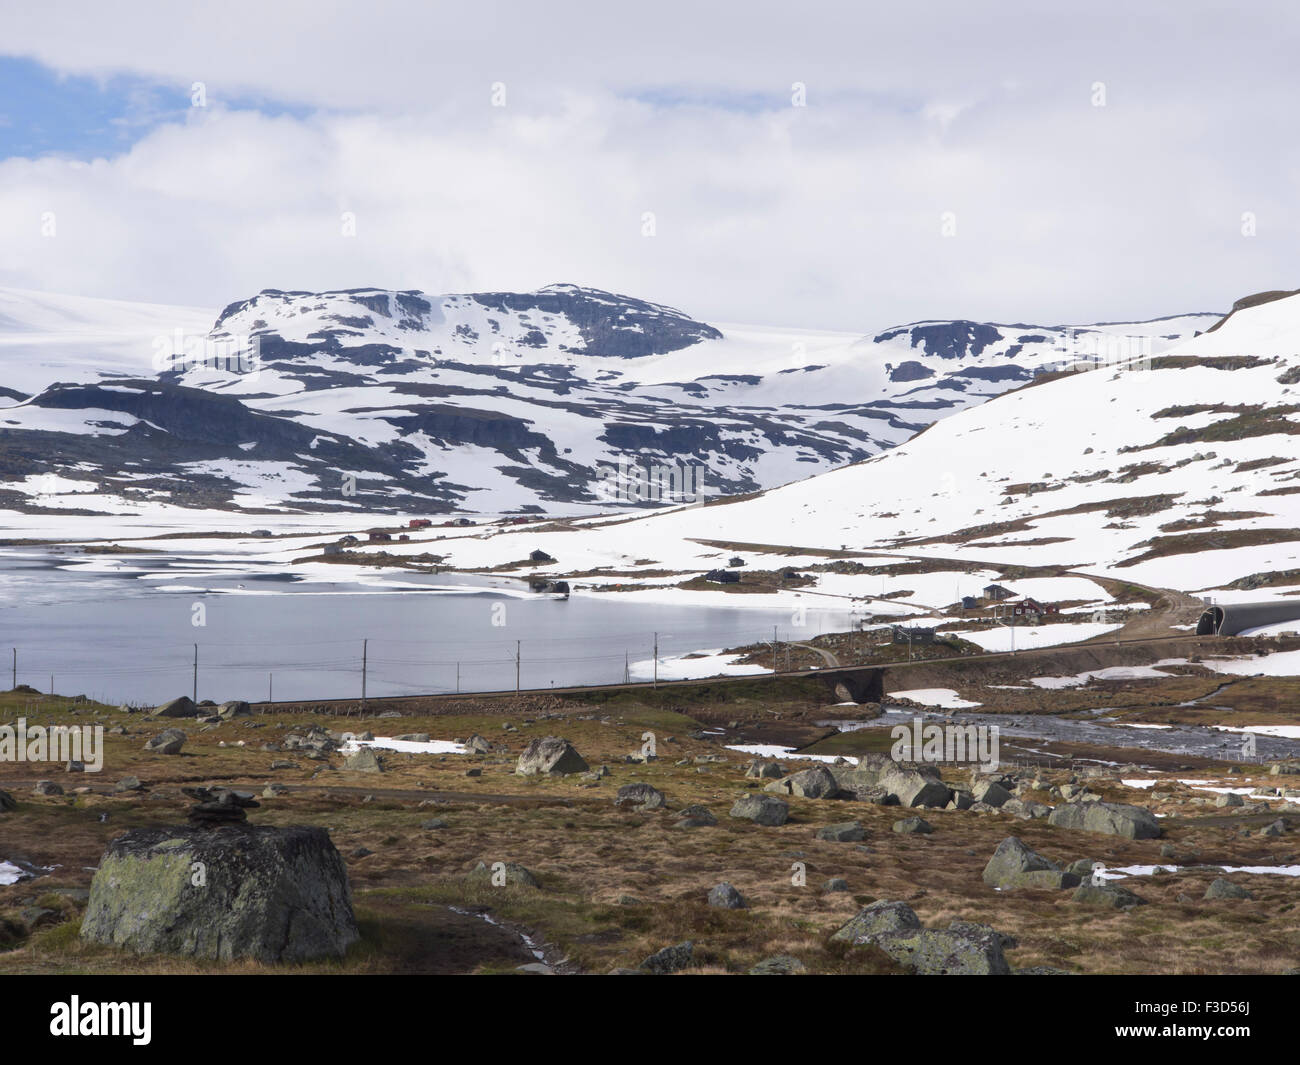 La montaña noruega, panorámica del lago Hardangervidda Finse, Noruega, el hielo y la nieve en el verano, y la línea de ferrocarril Bergensbanen Rallarvegen curvatura Foto de stock